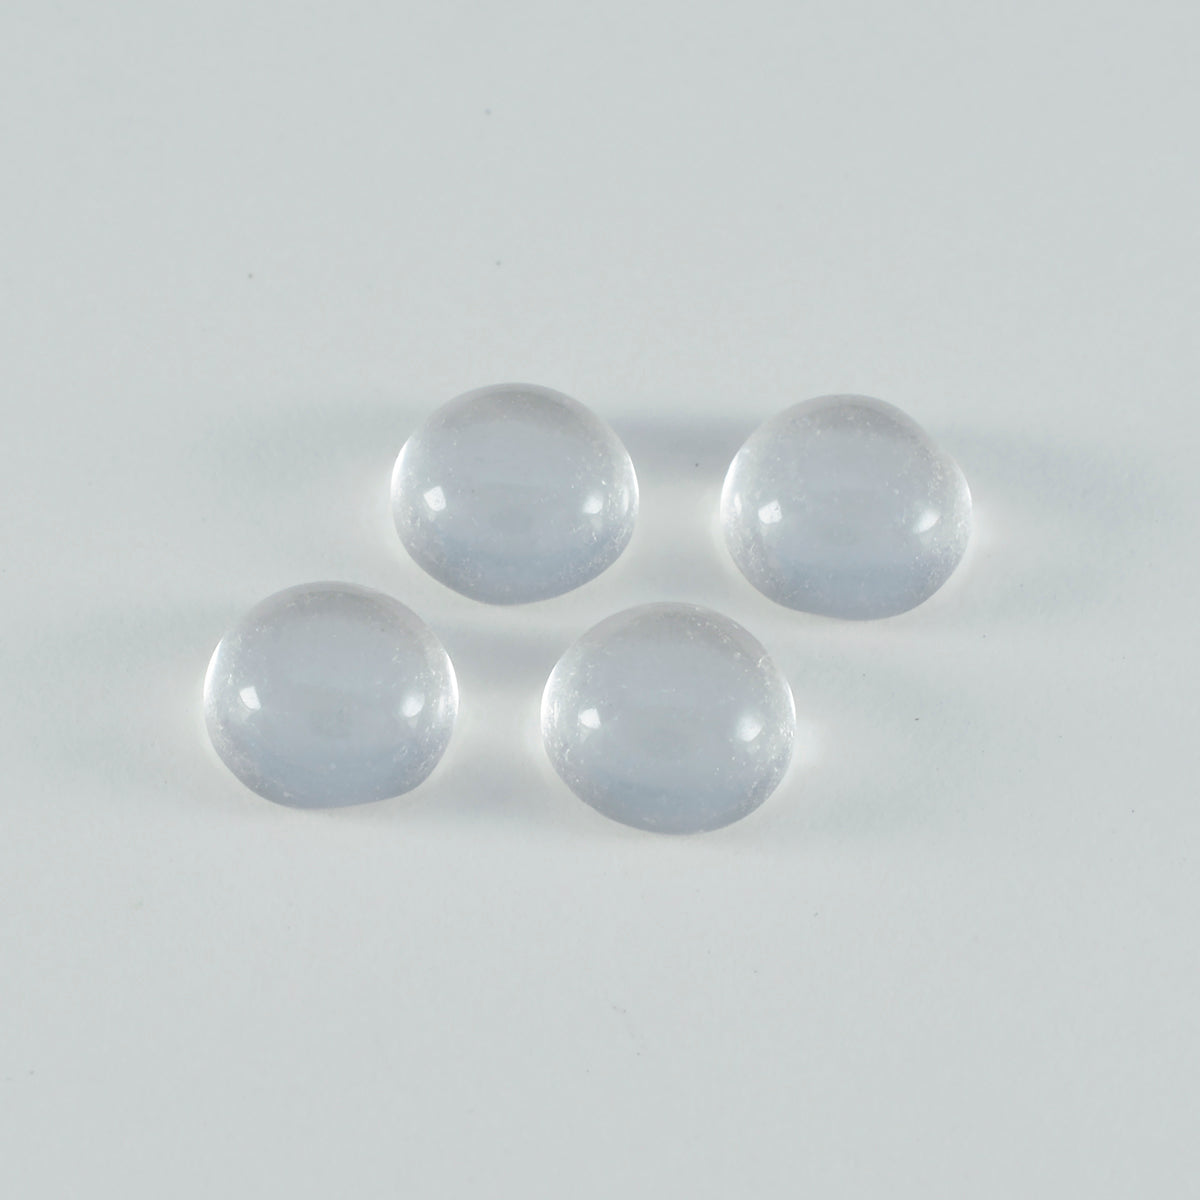 Riyogems 1 cabujón de cuarzo de cristal blanco de 7x7 mm, forma redonda, gema de calidad A+1